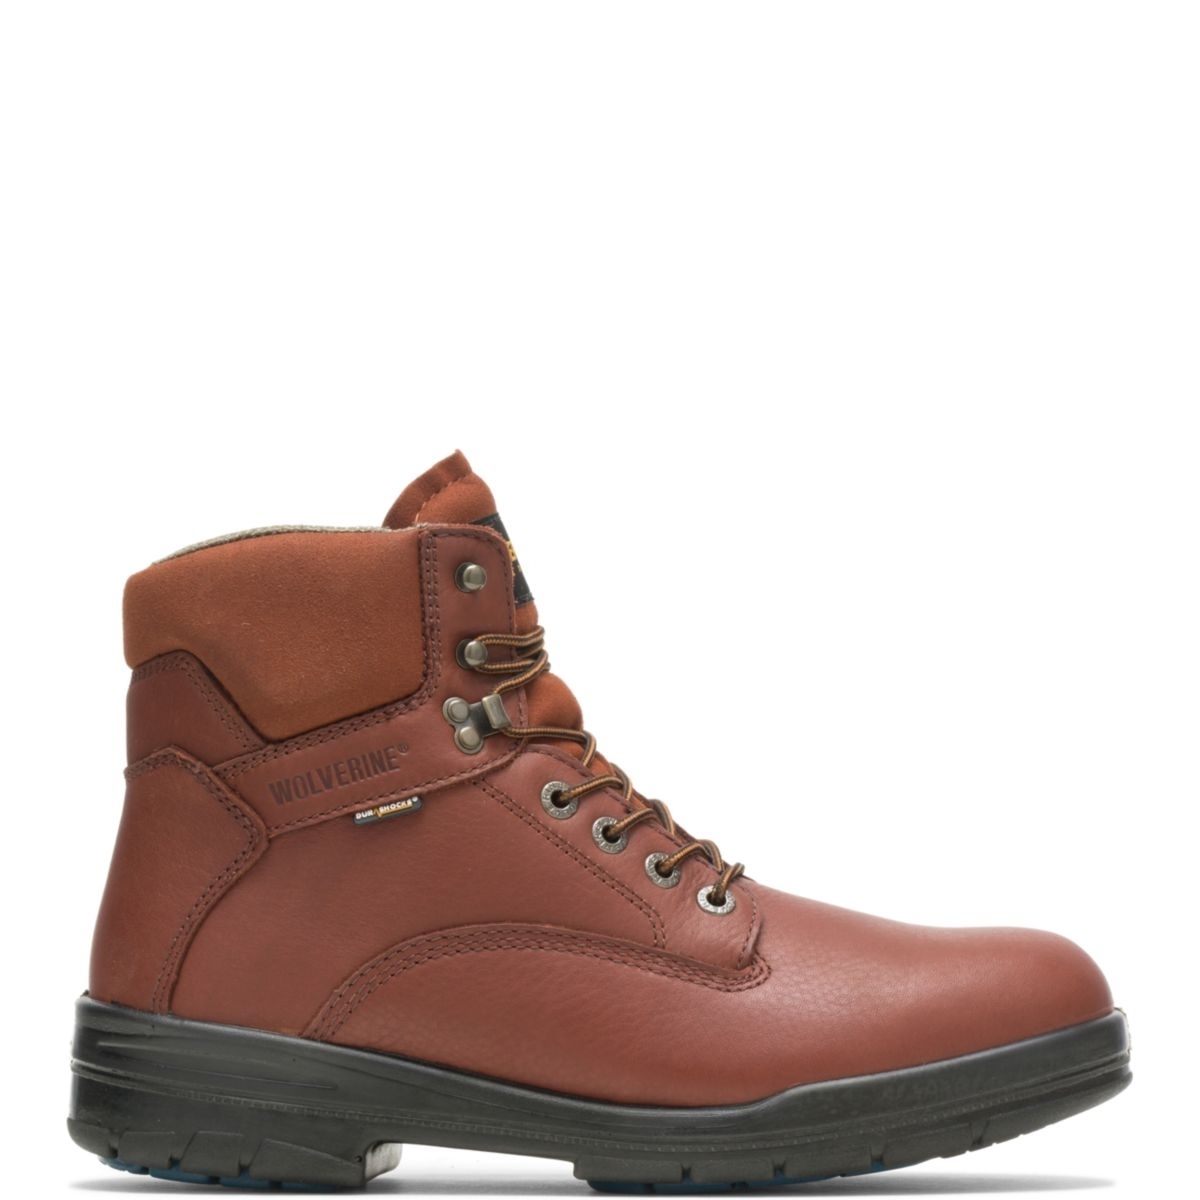 WOLVERINE Men's 6 DuraShocksÂ® Steel Toe Direct-Attach Work Boot Brown - W03120 BROWN - BROWN, 7 Wide